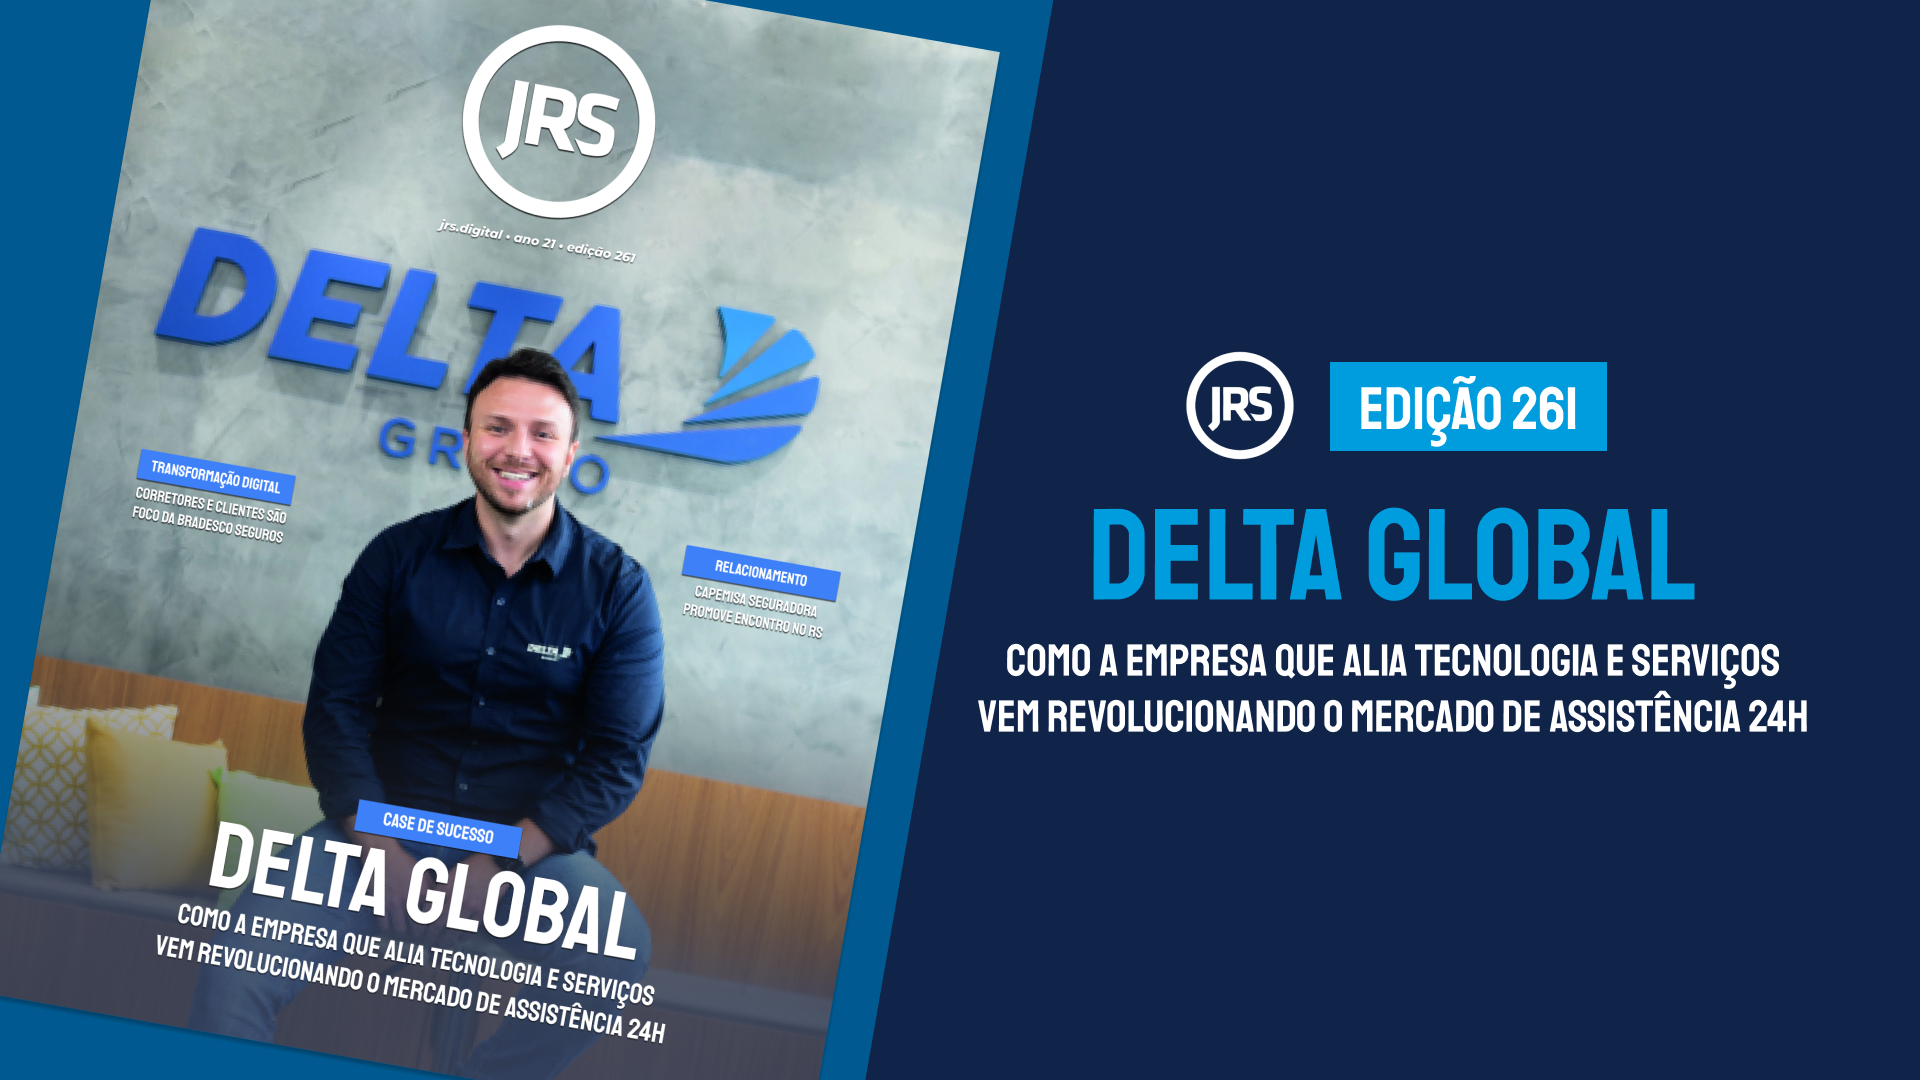 Delta Global: Como a empresa que alia tecnologia e serviços vem revolucionando o mercado de assistência 24h